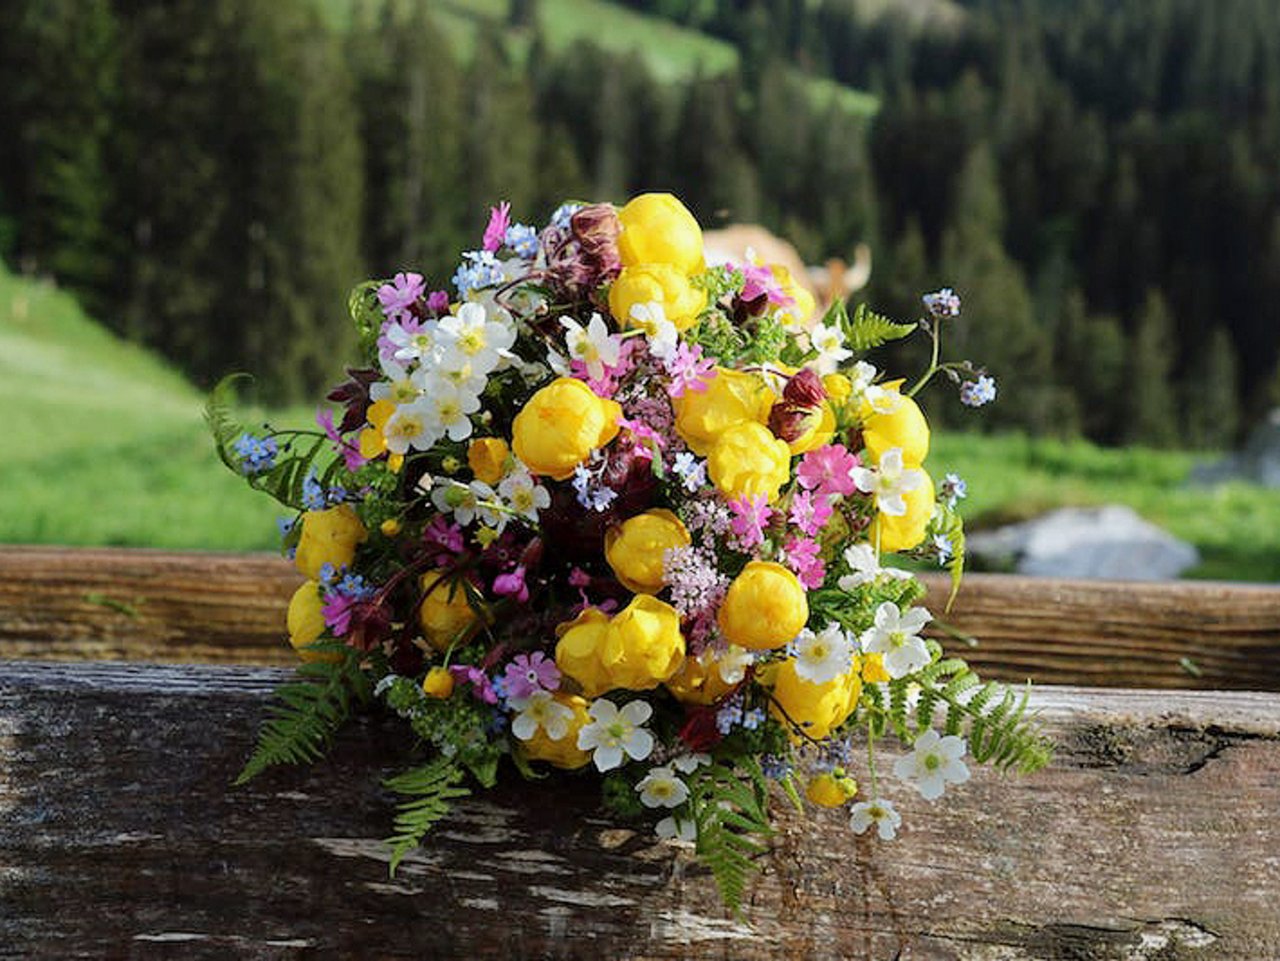 Eine geballte Ladung Sommer-Blumen von der Alp. Claudia Aebersold aus Diemtigen BE hat sie gepflückt und liebevoll arrangiert.